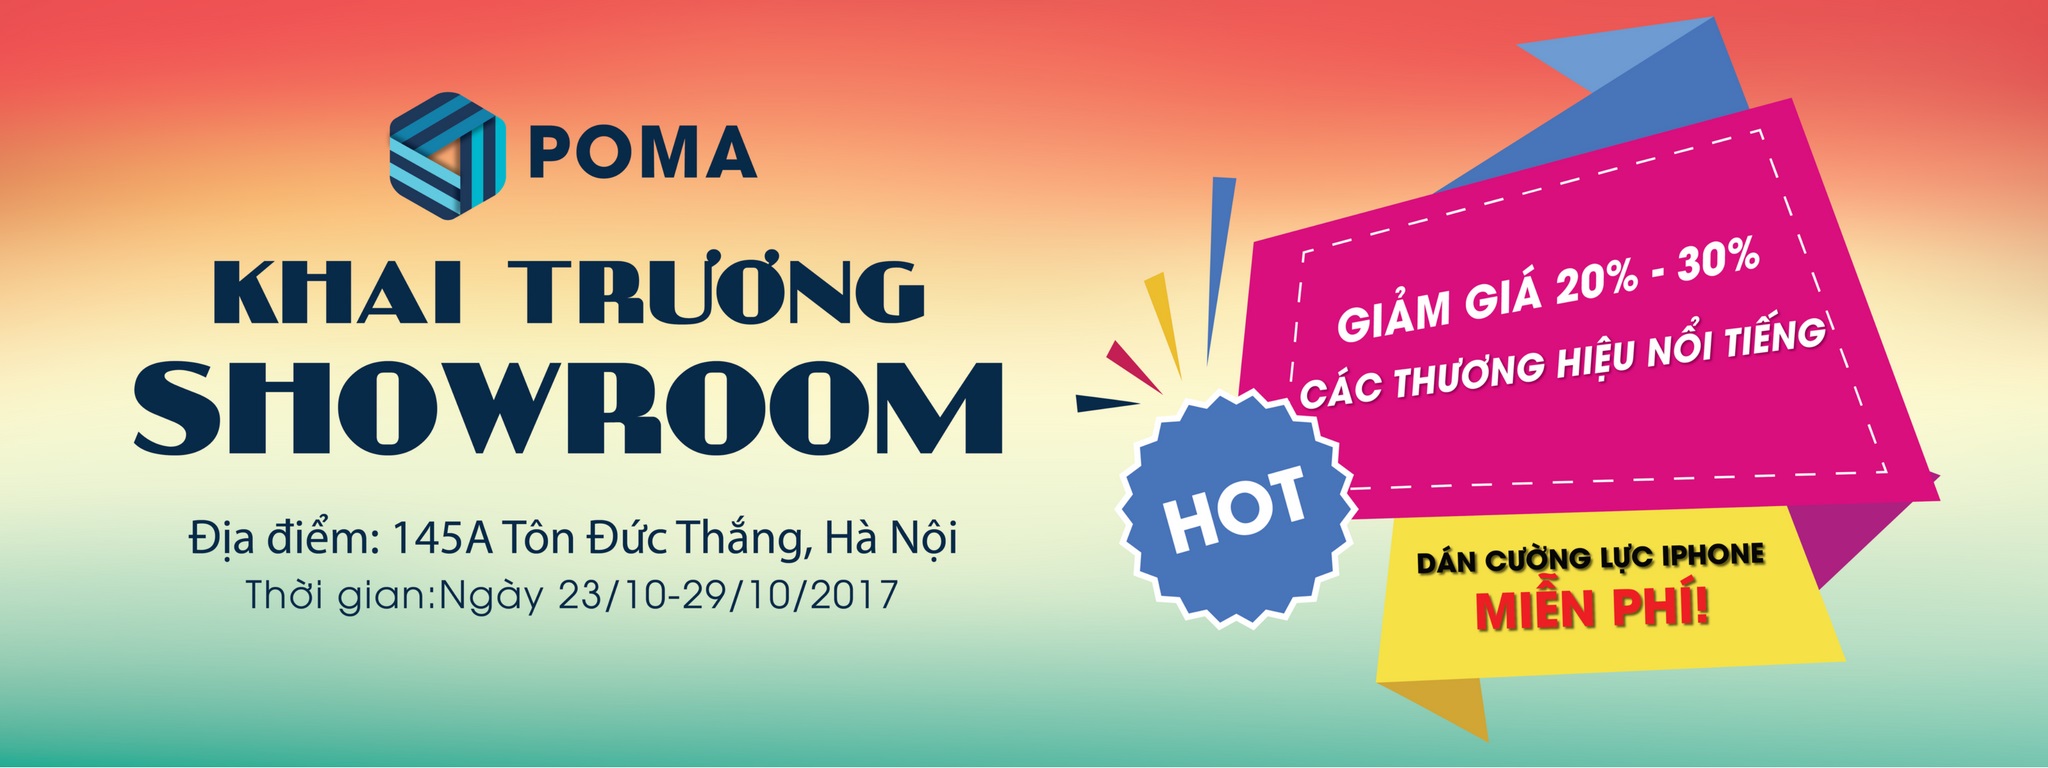 [QC] Poma.vn khai trương cửa hàng bán lẻ phụ kiện chính hãng tại Hà Nội, giảm giá tới 30%